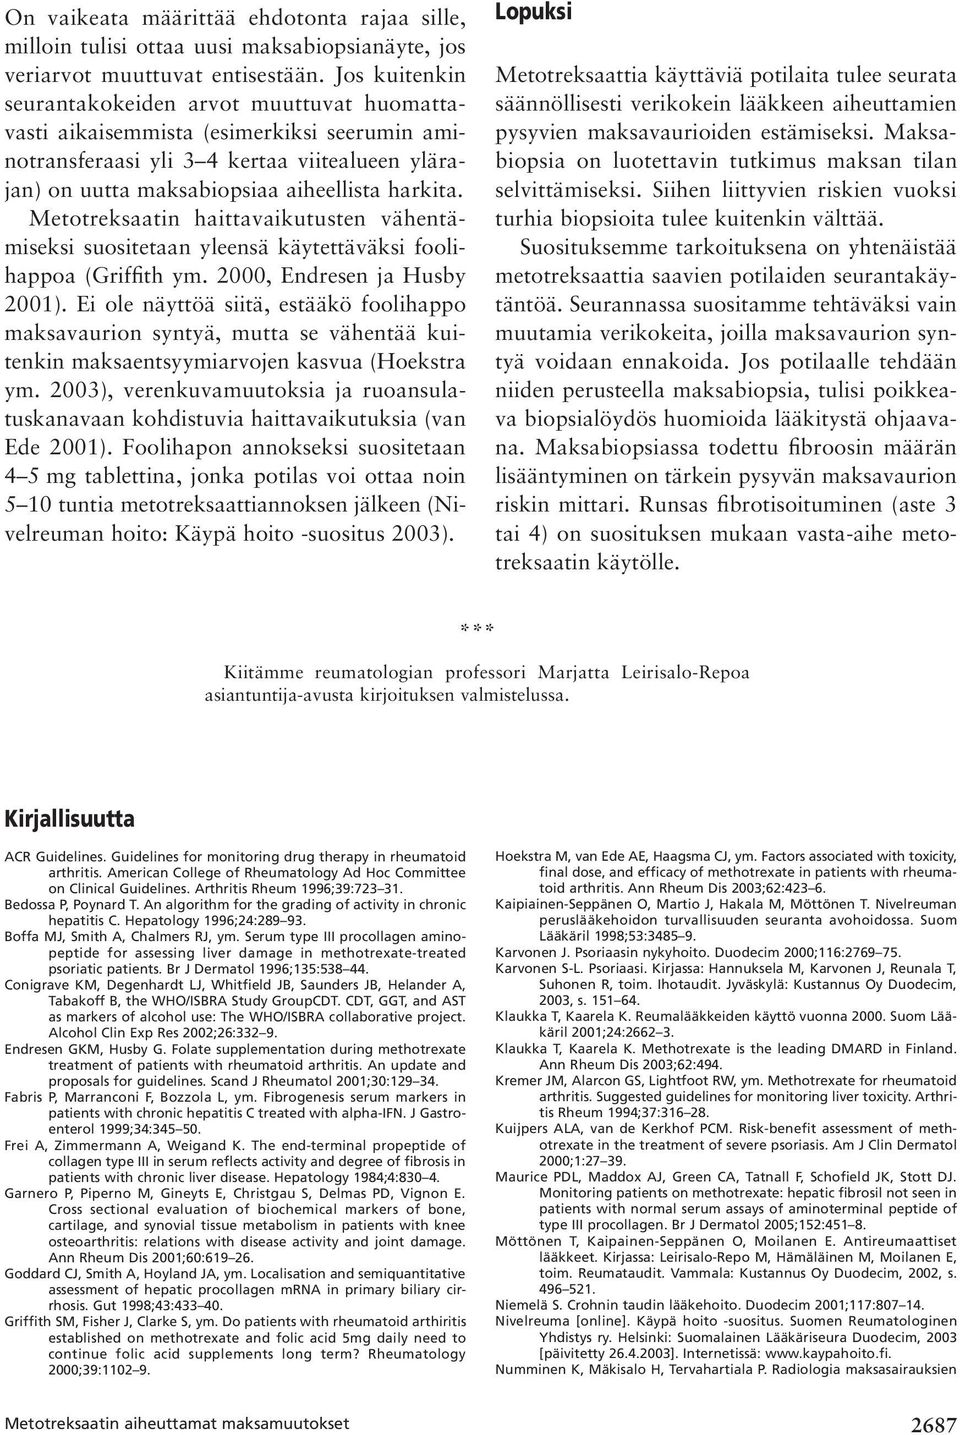 Metotreksaatin haittavaikutusten vähentämiseksi suositetaan yleensä käytettäväksi foolihappoa (Griffith ym. 2000, Endresen ja Husby 2001).